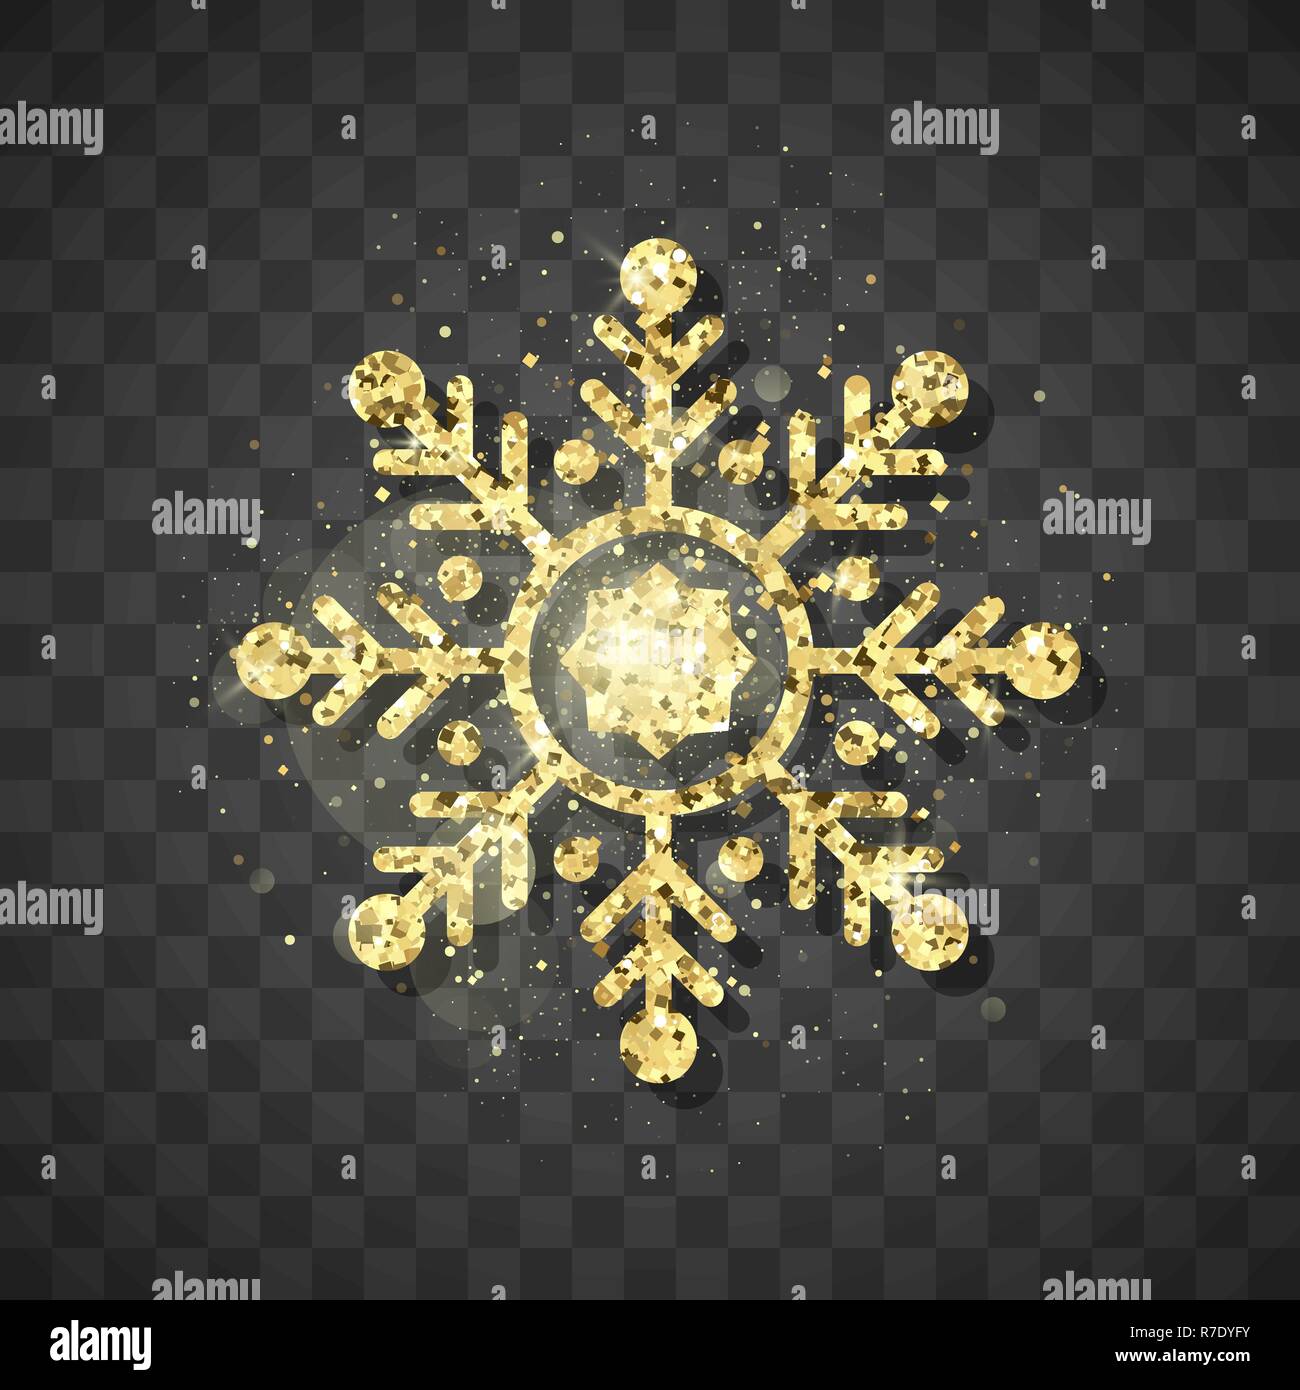 Glänzen golden Schneeflocke auf dem schwarzen Hintergrund. Weihnachten und neues Jahr golden glitzernden Schneeflocken Dekoration mit glänzenden funkelndes Licht Effekt. Vektor Stock Vektor